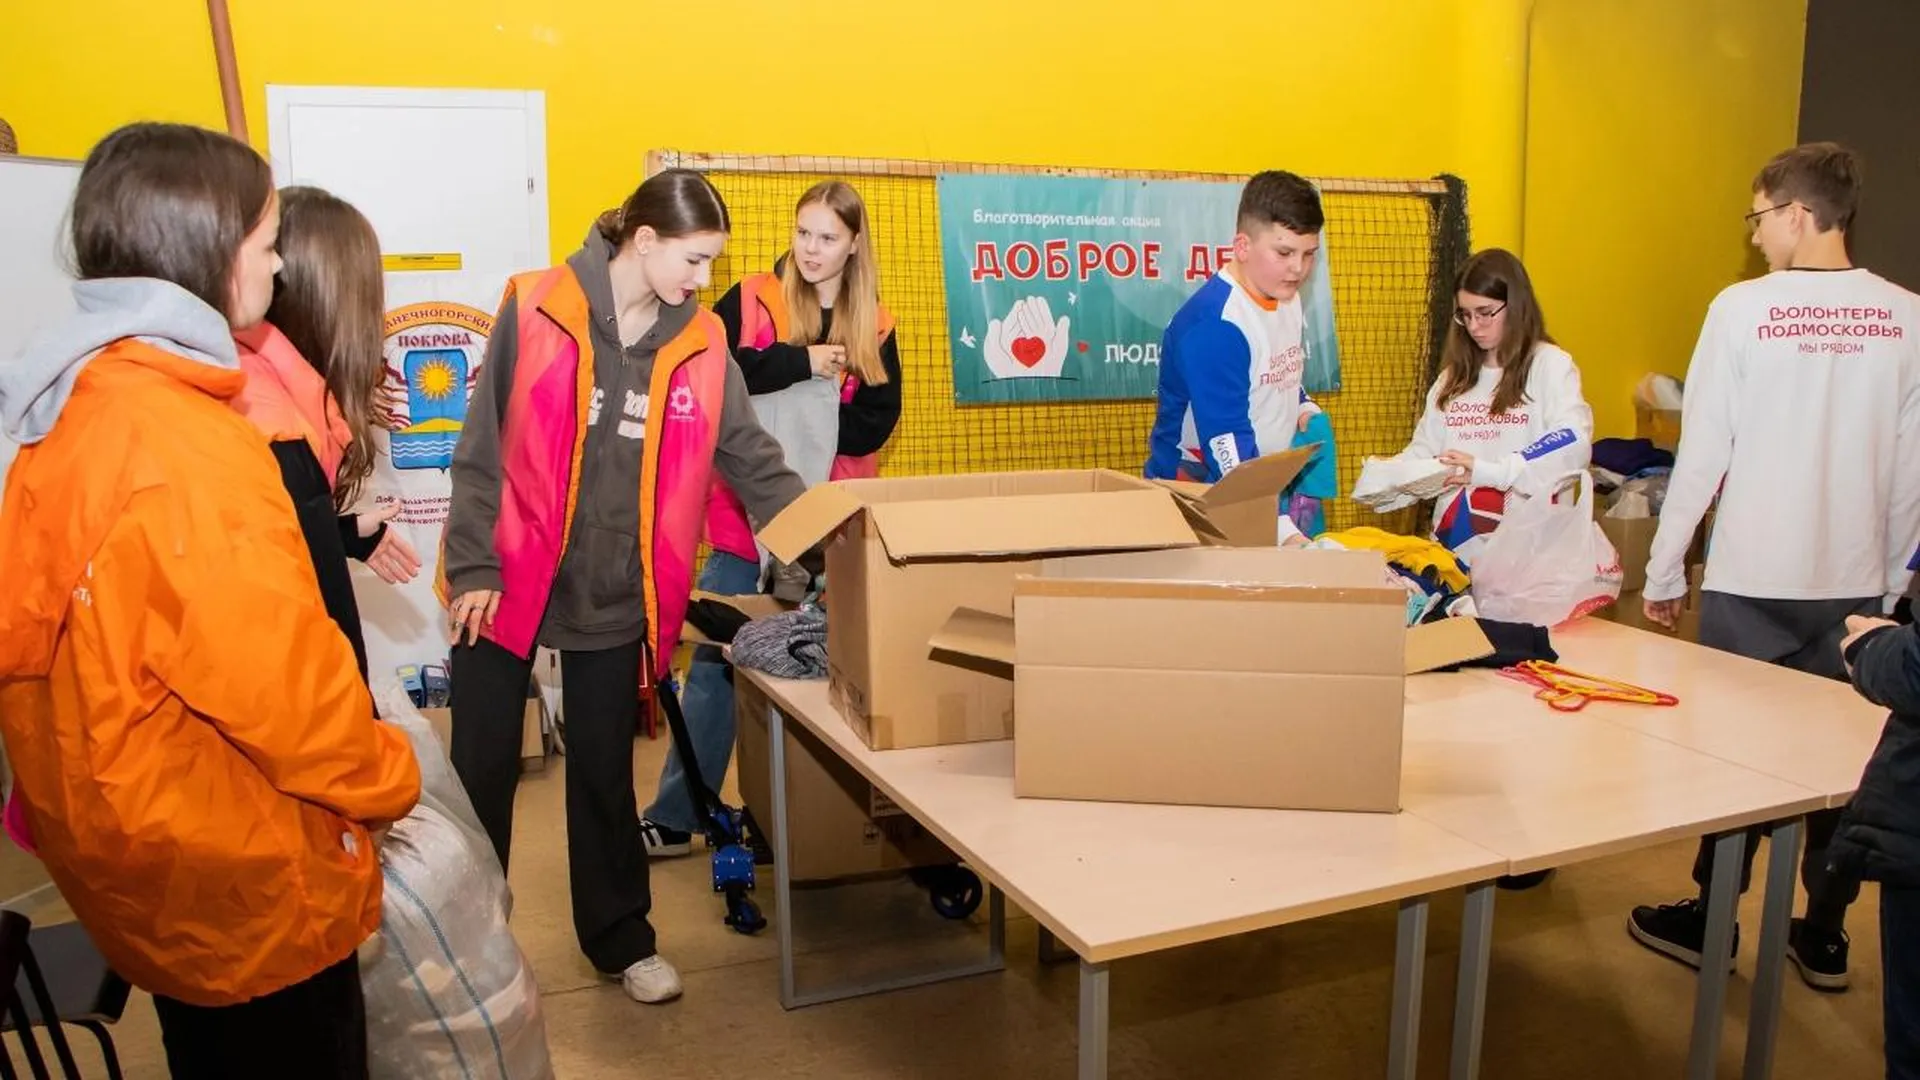 Пятьдесят шесть тонн гуманитарной помощи собрали в Солнечногорске в рамках акции «Доброе дело»